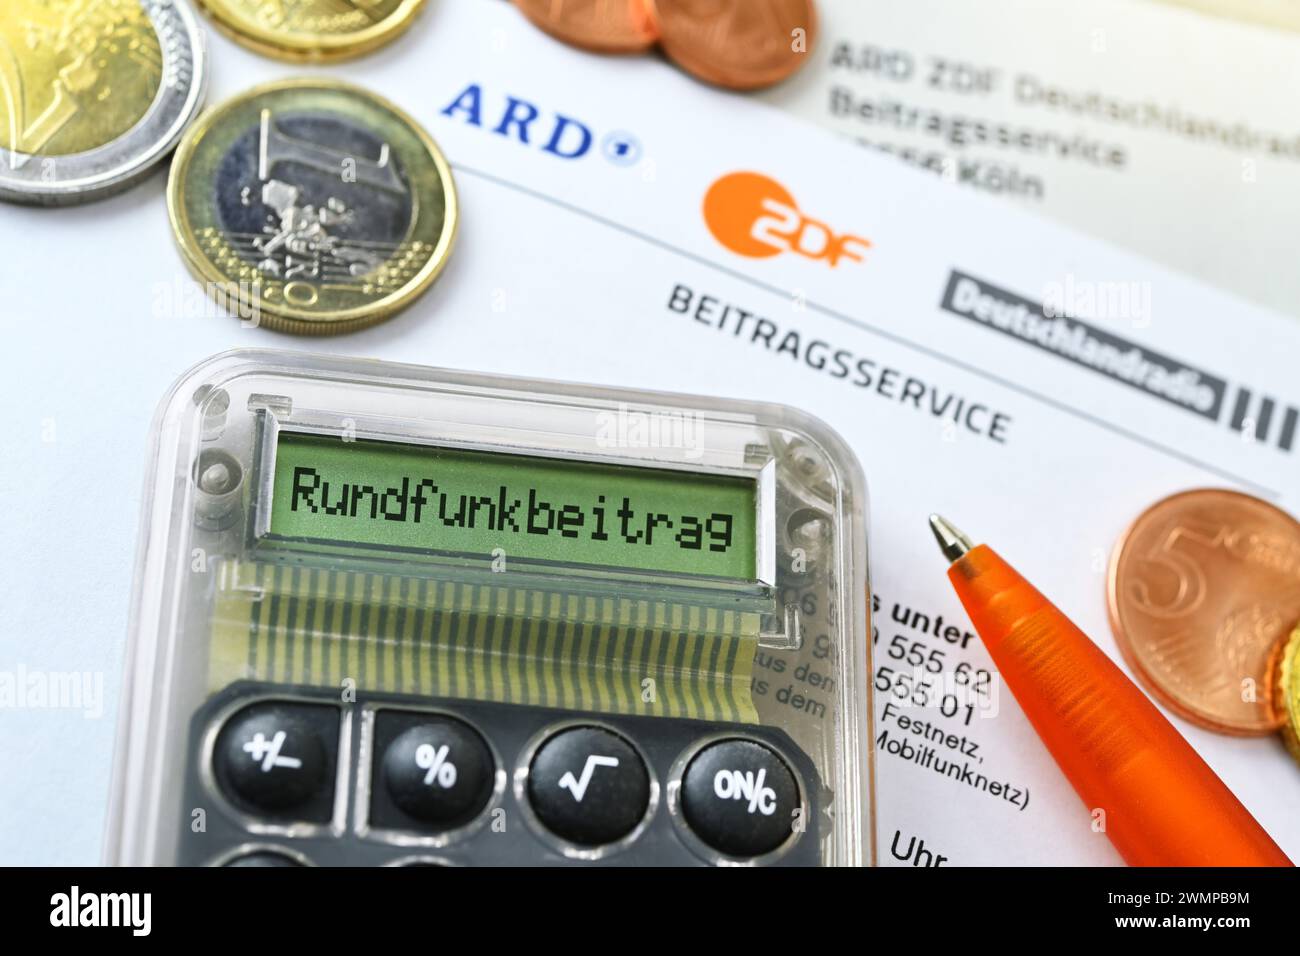 Lettera dell'ARD ZDF Deutschlandradio Beitragsservice con Calcolatore e iscrizione "Rundfunkbeitrag", foto simbolica dell'aumento della Broa Foto Stock